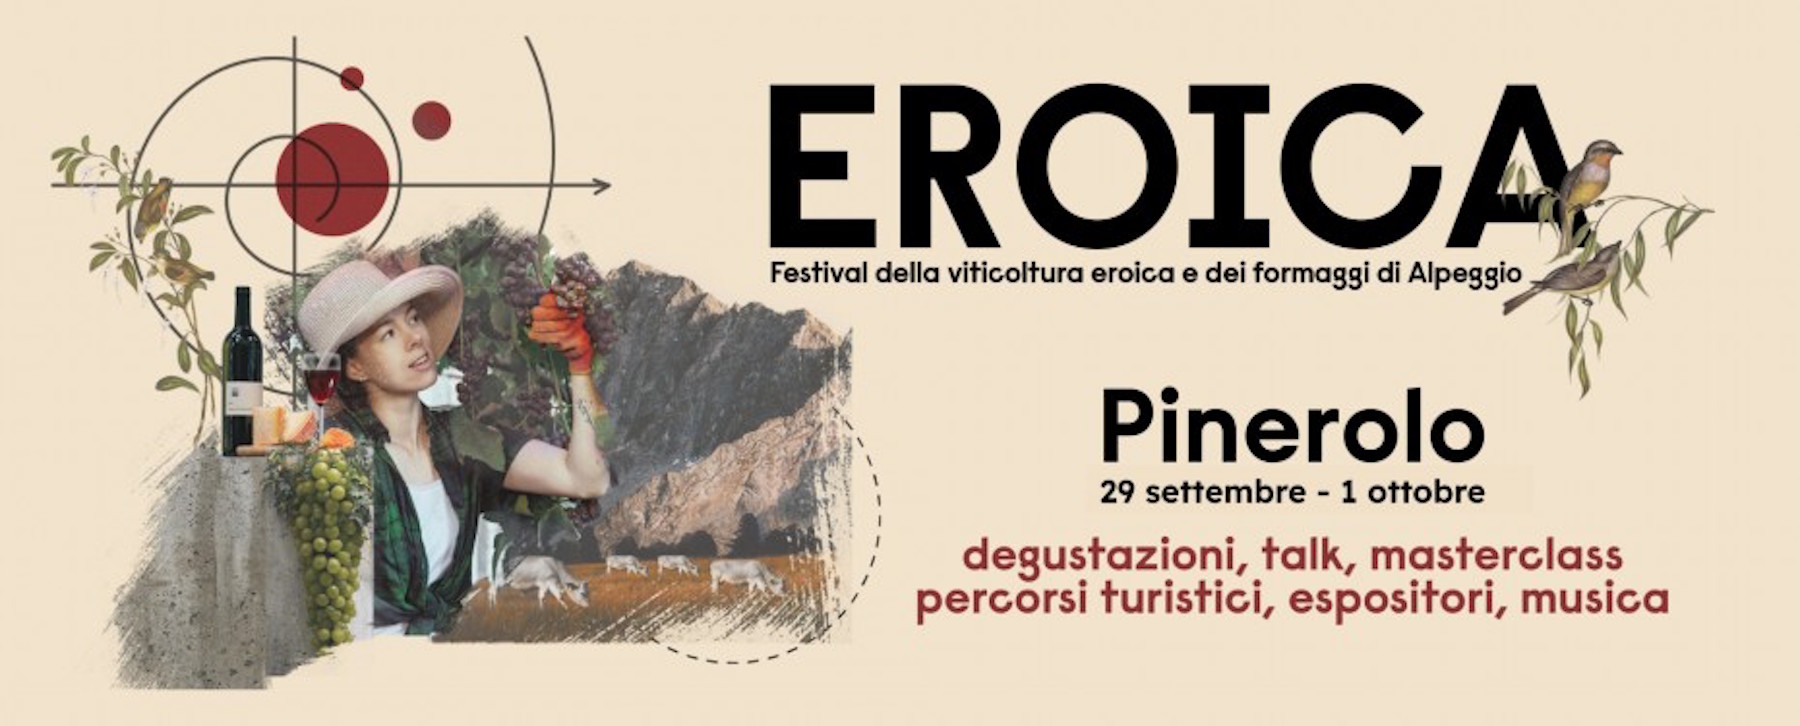 Eroica Pinerolo, festival della viticoltura eroica e dei formaggi d'alpeggio